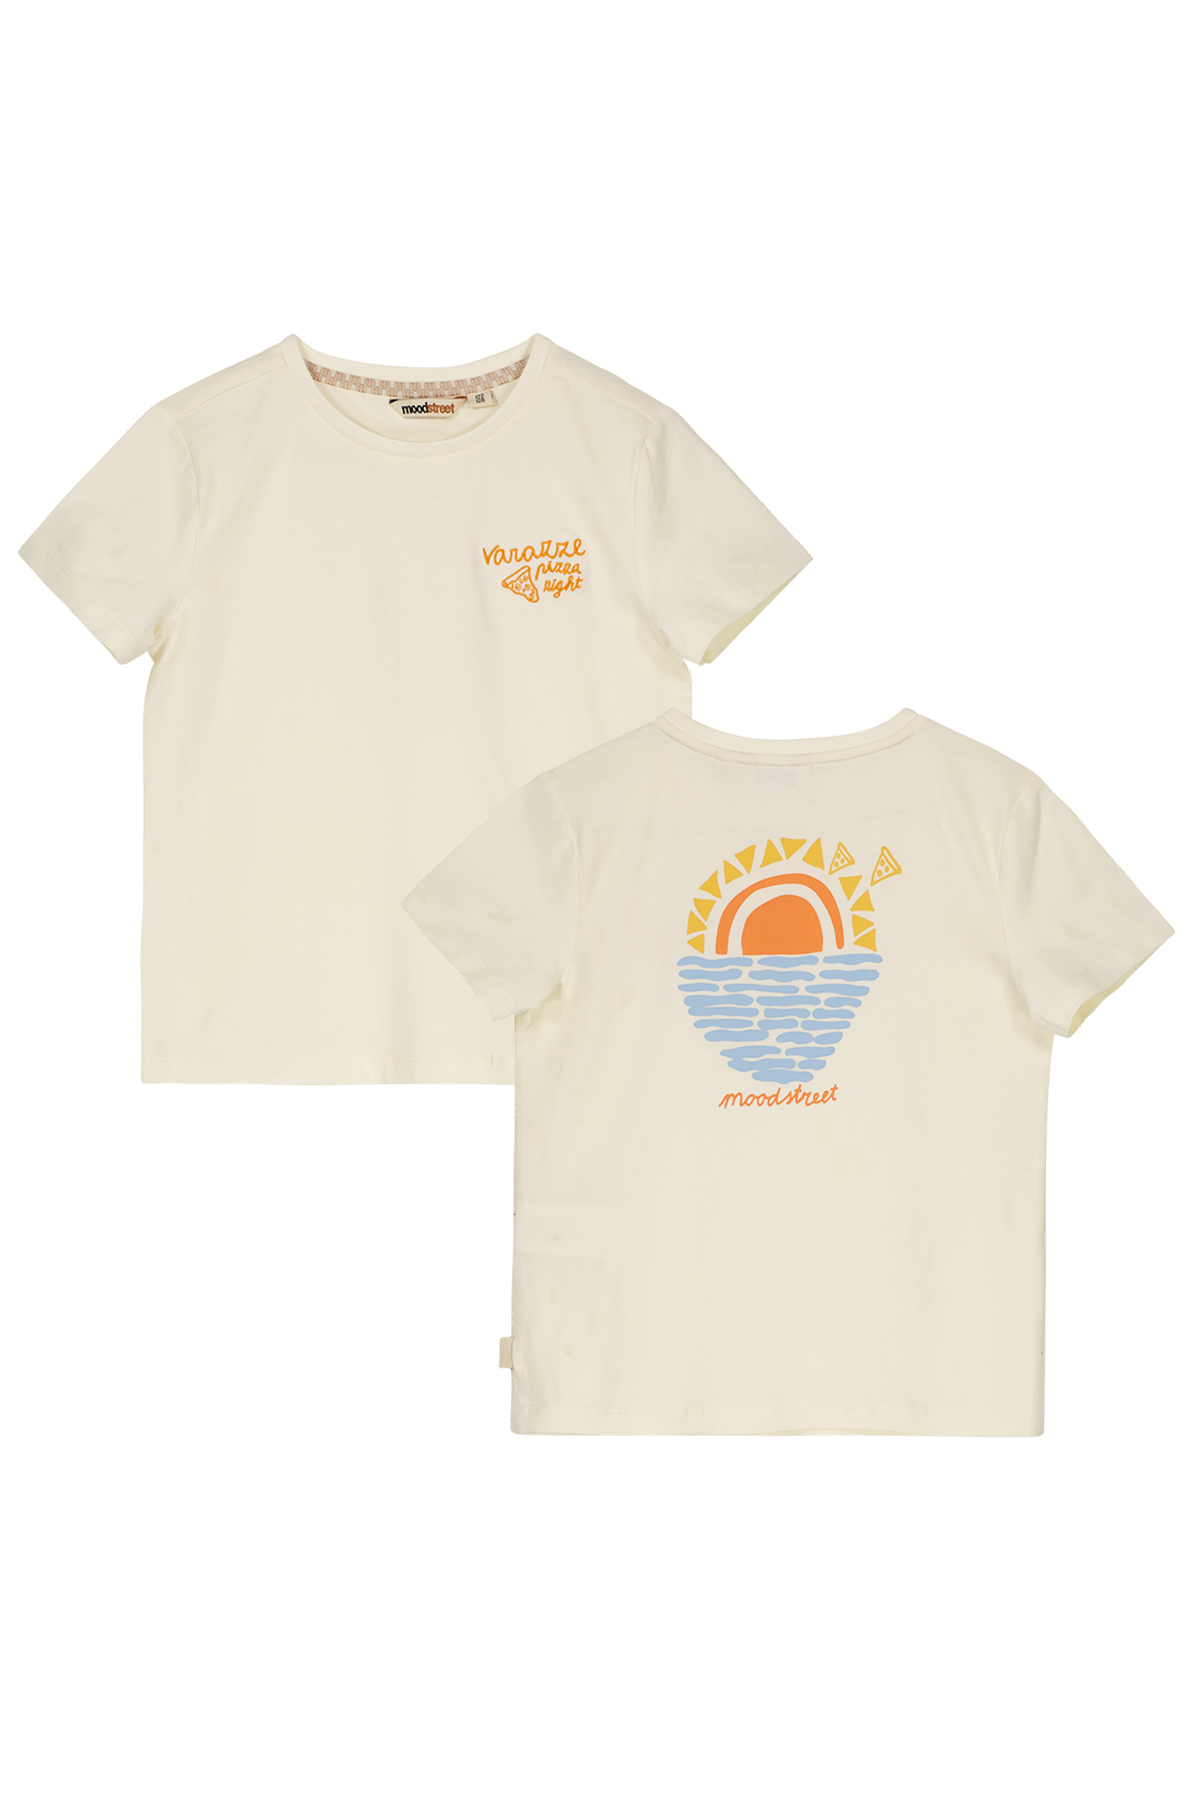 T-Shirt Girls sunrise t-shirt